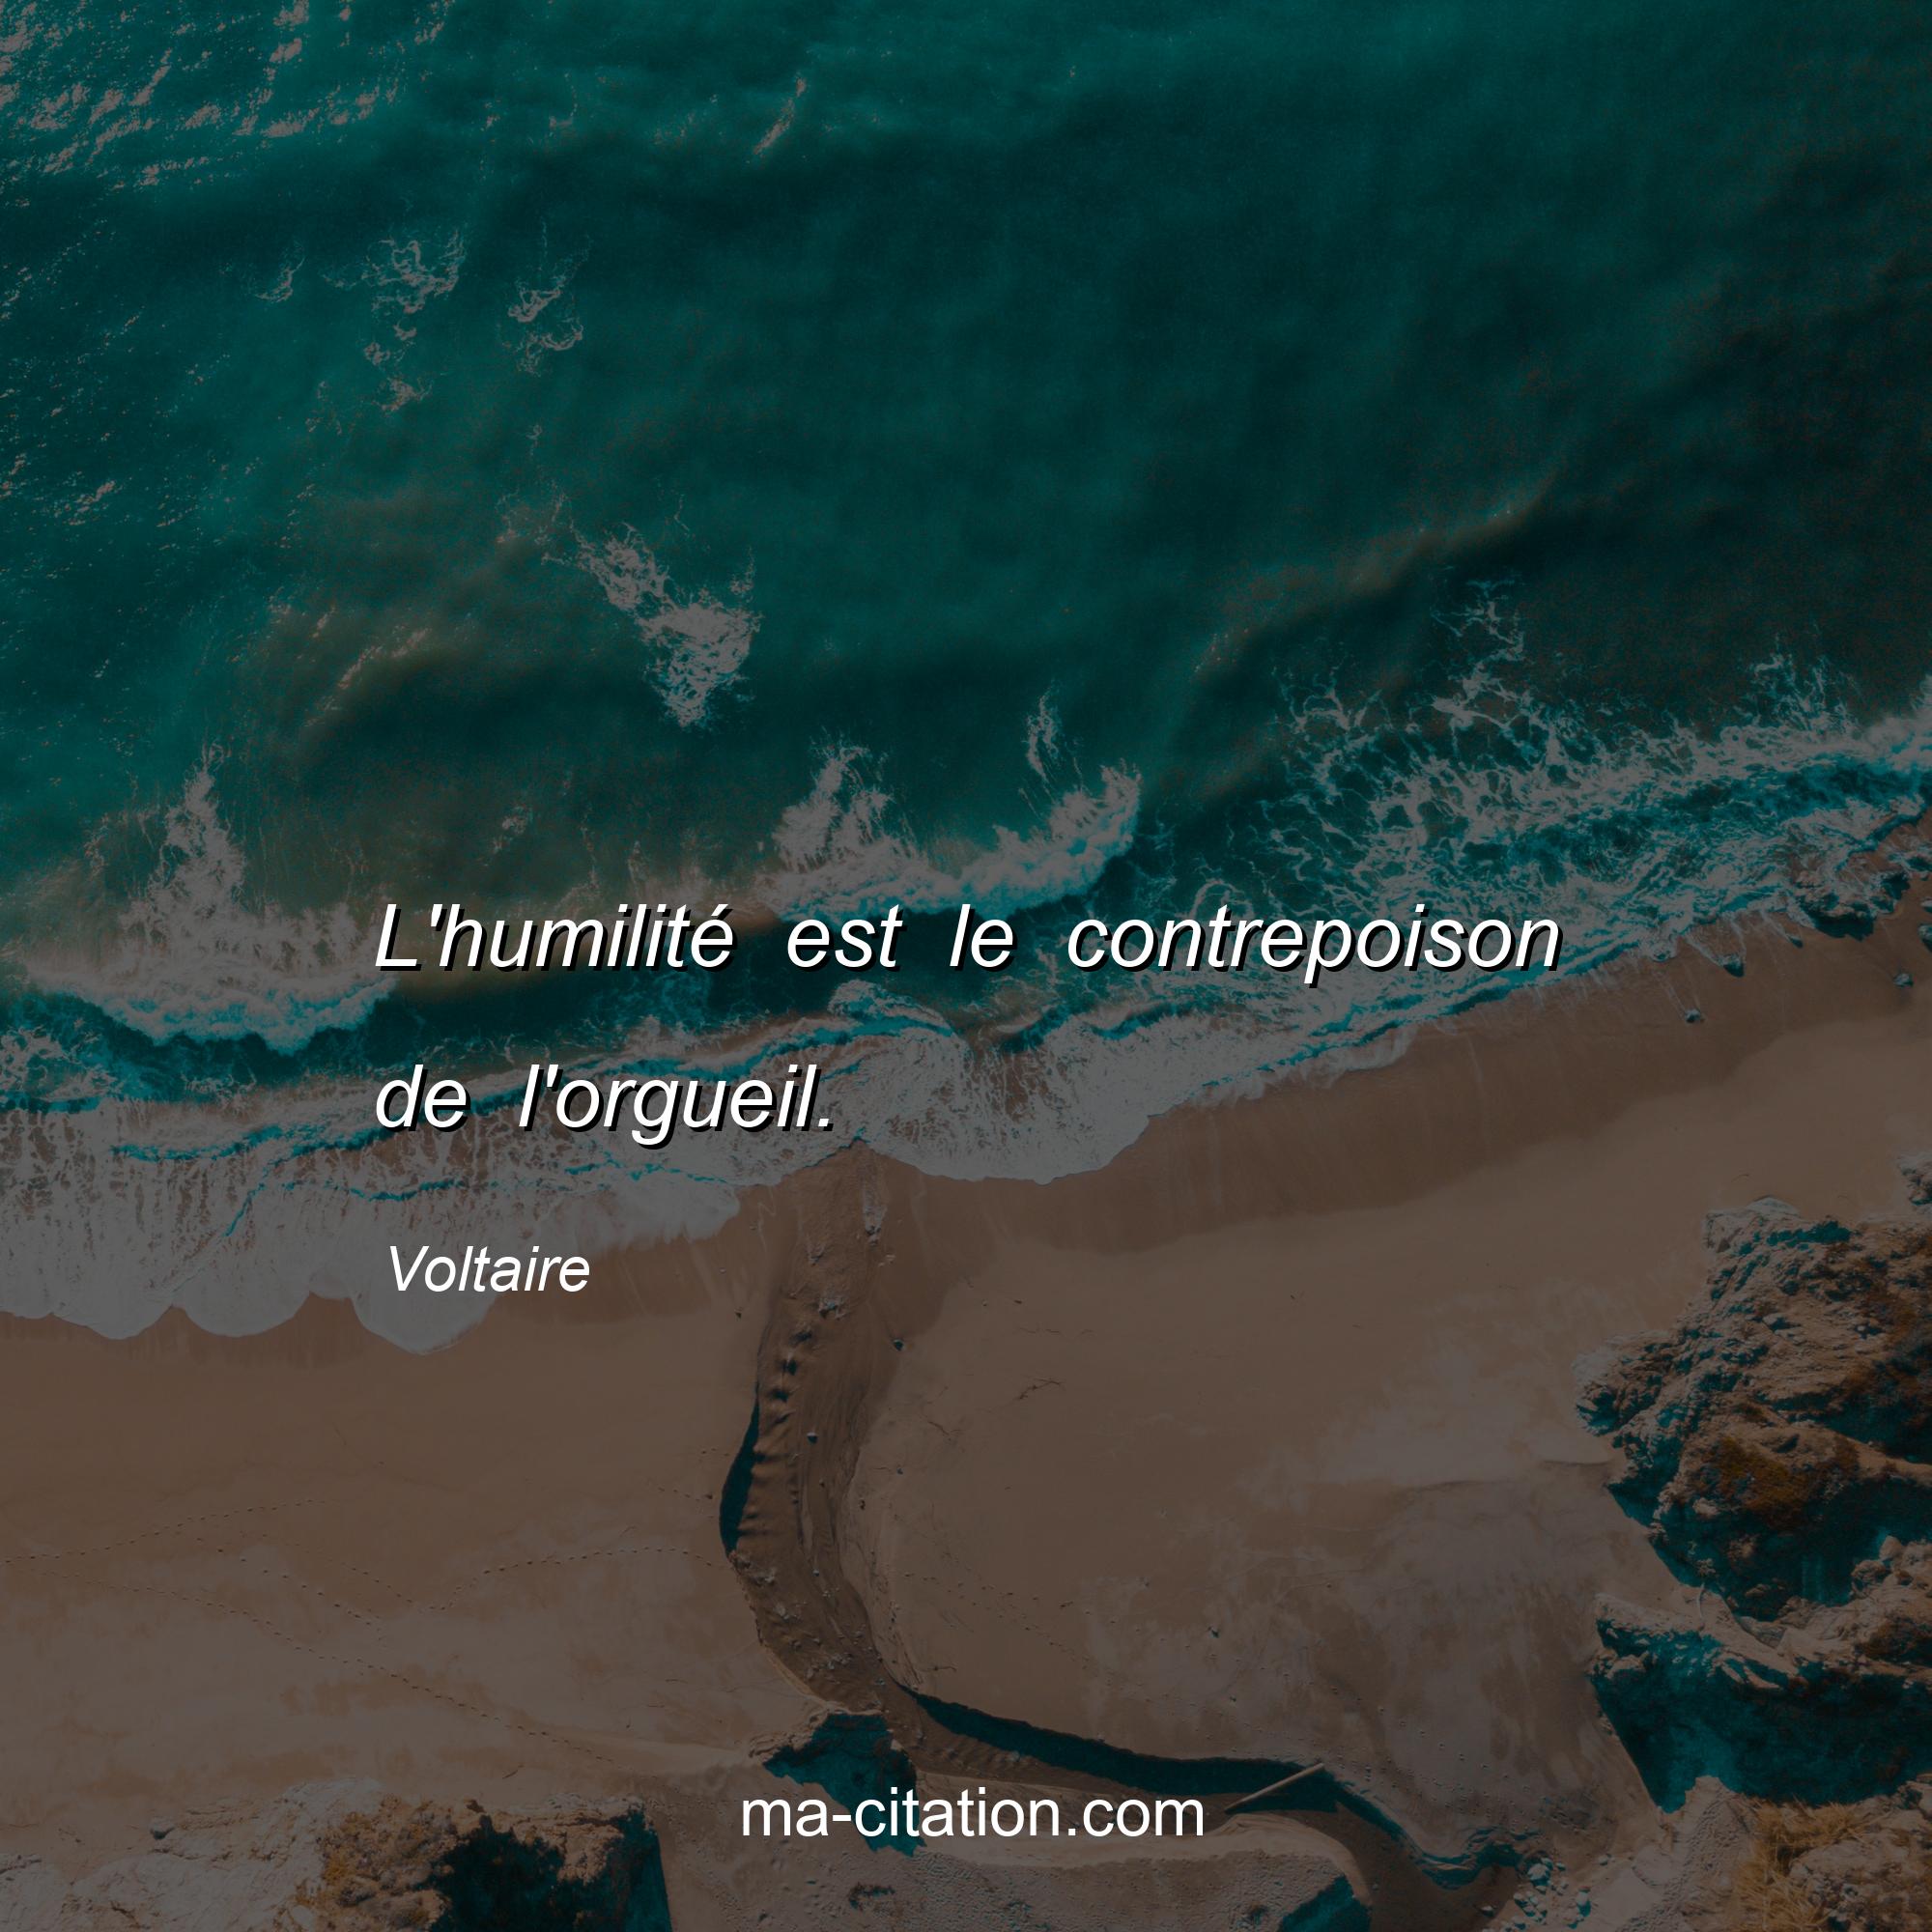 Voltaire : L'humilité est le contrepoison de l'orgueil.